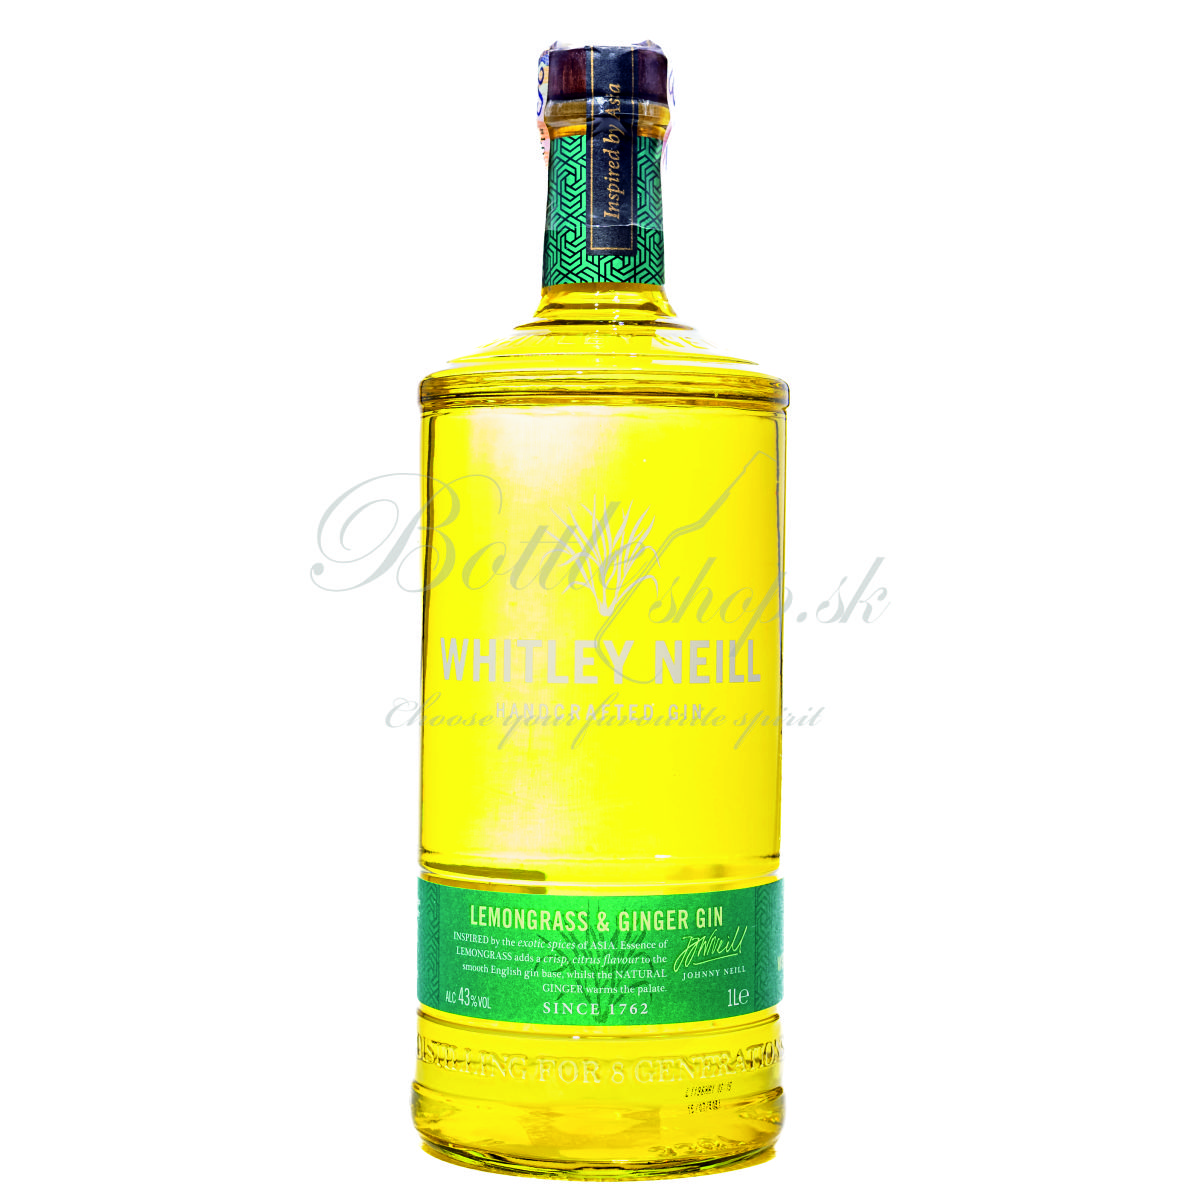 whitley neill lemongrass & ginger gin 1l